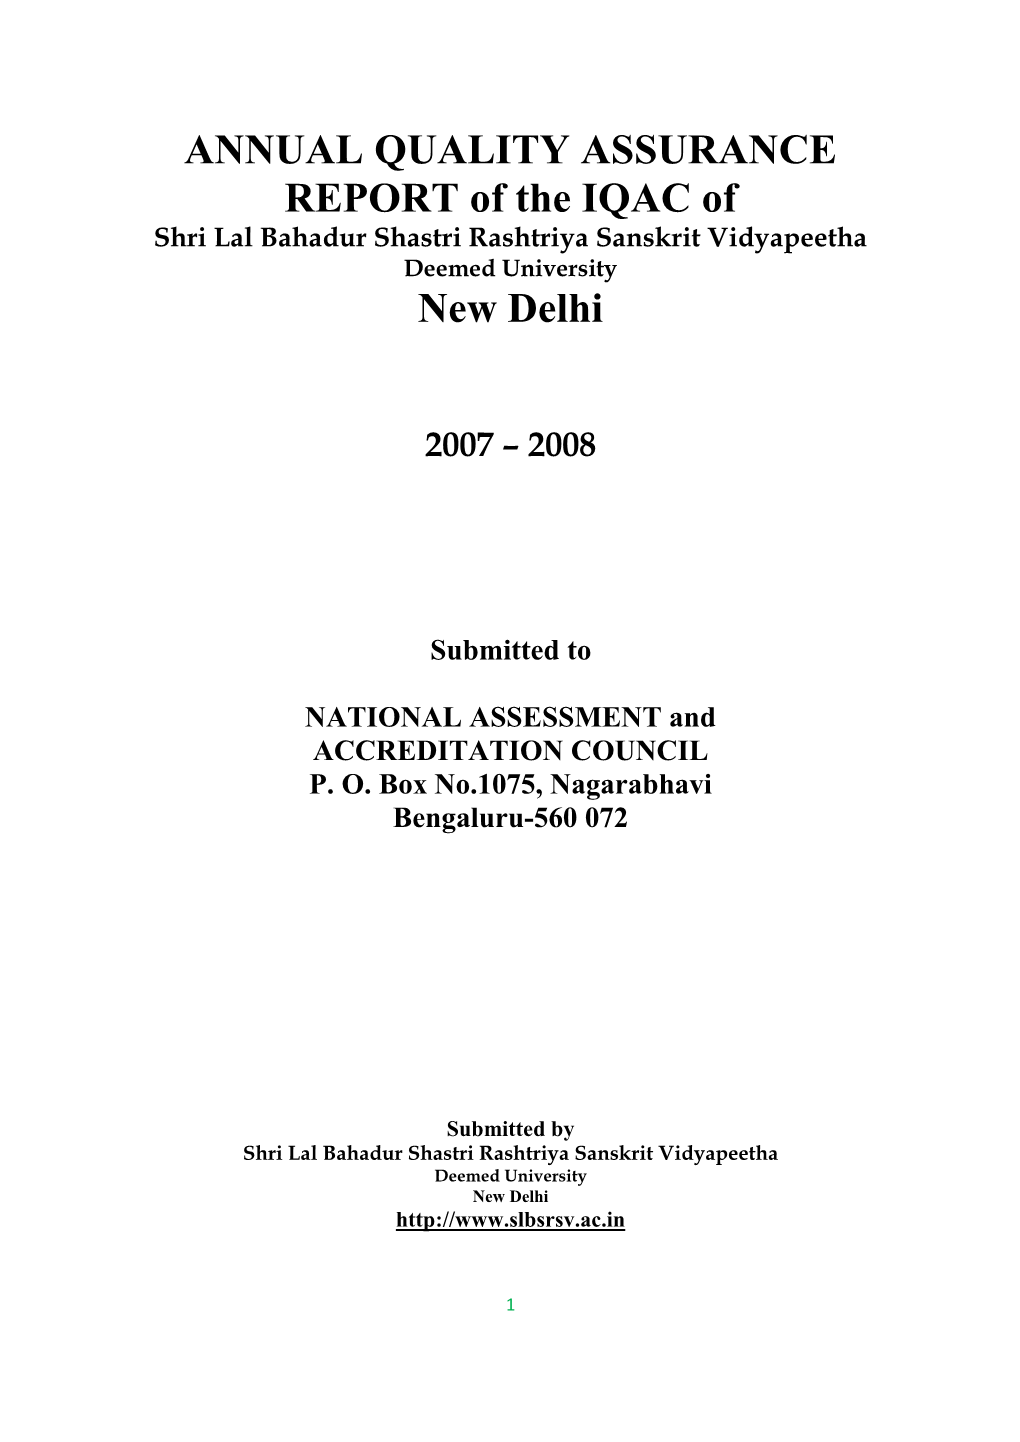 Shri Lal Bahadur Shastri Rashtriya Sanskrit Vidyapeetha Deemed University New Delhi